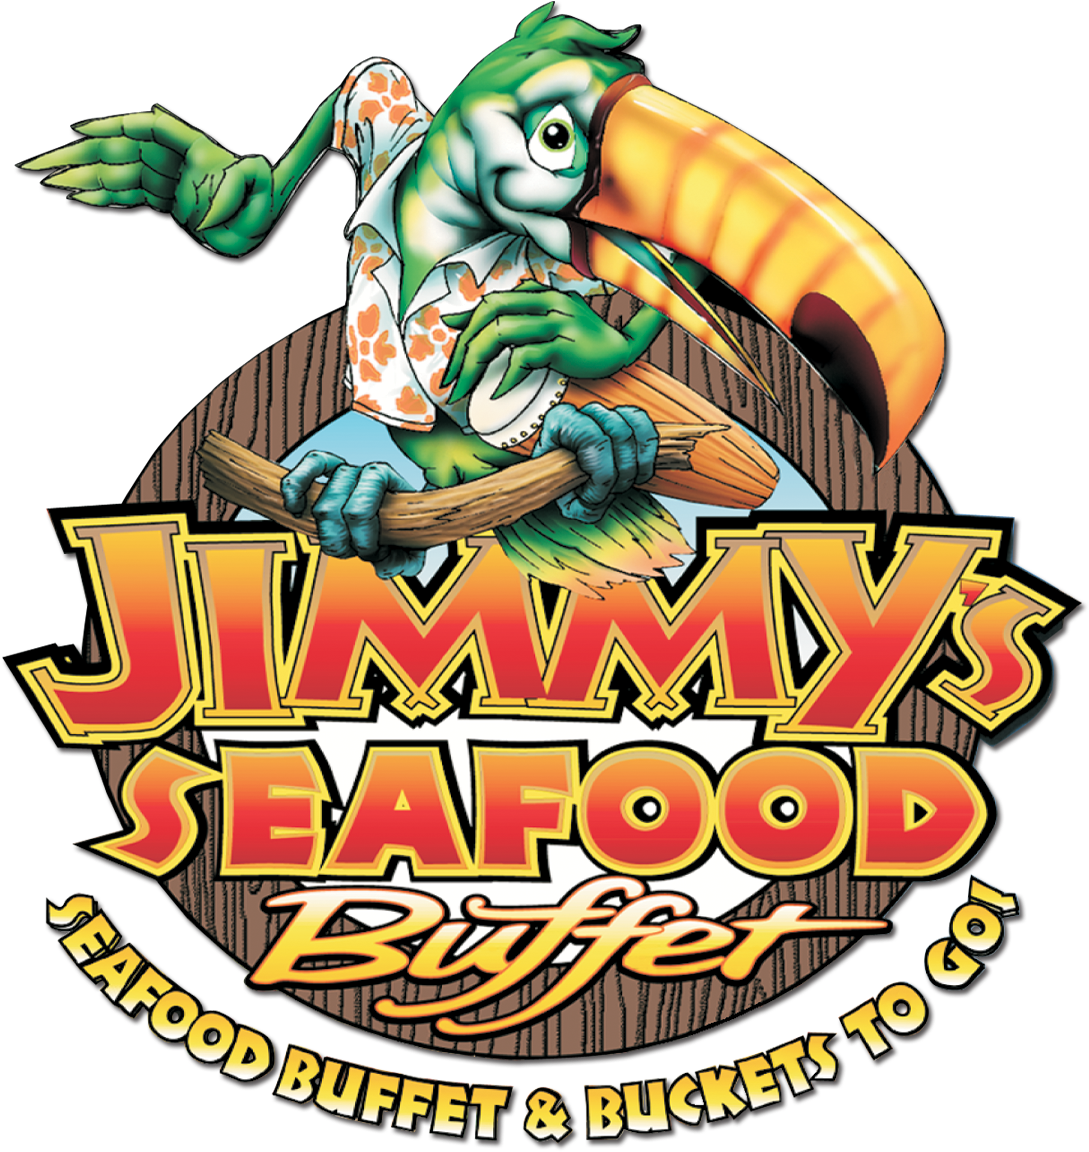 Jimmy's Seafood Buffet Jimmy's Seafood Buffet Jimmy's - Seafood Buffet (1108x1184)